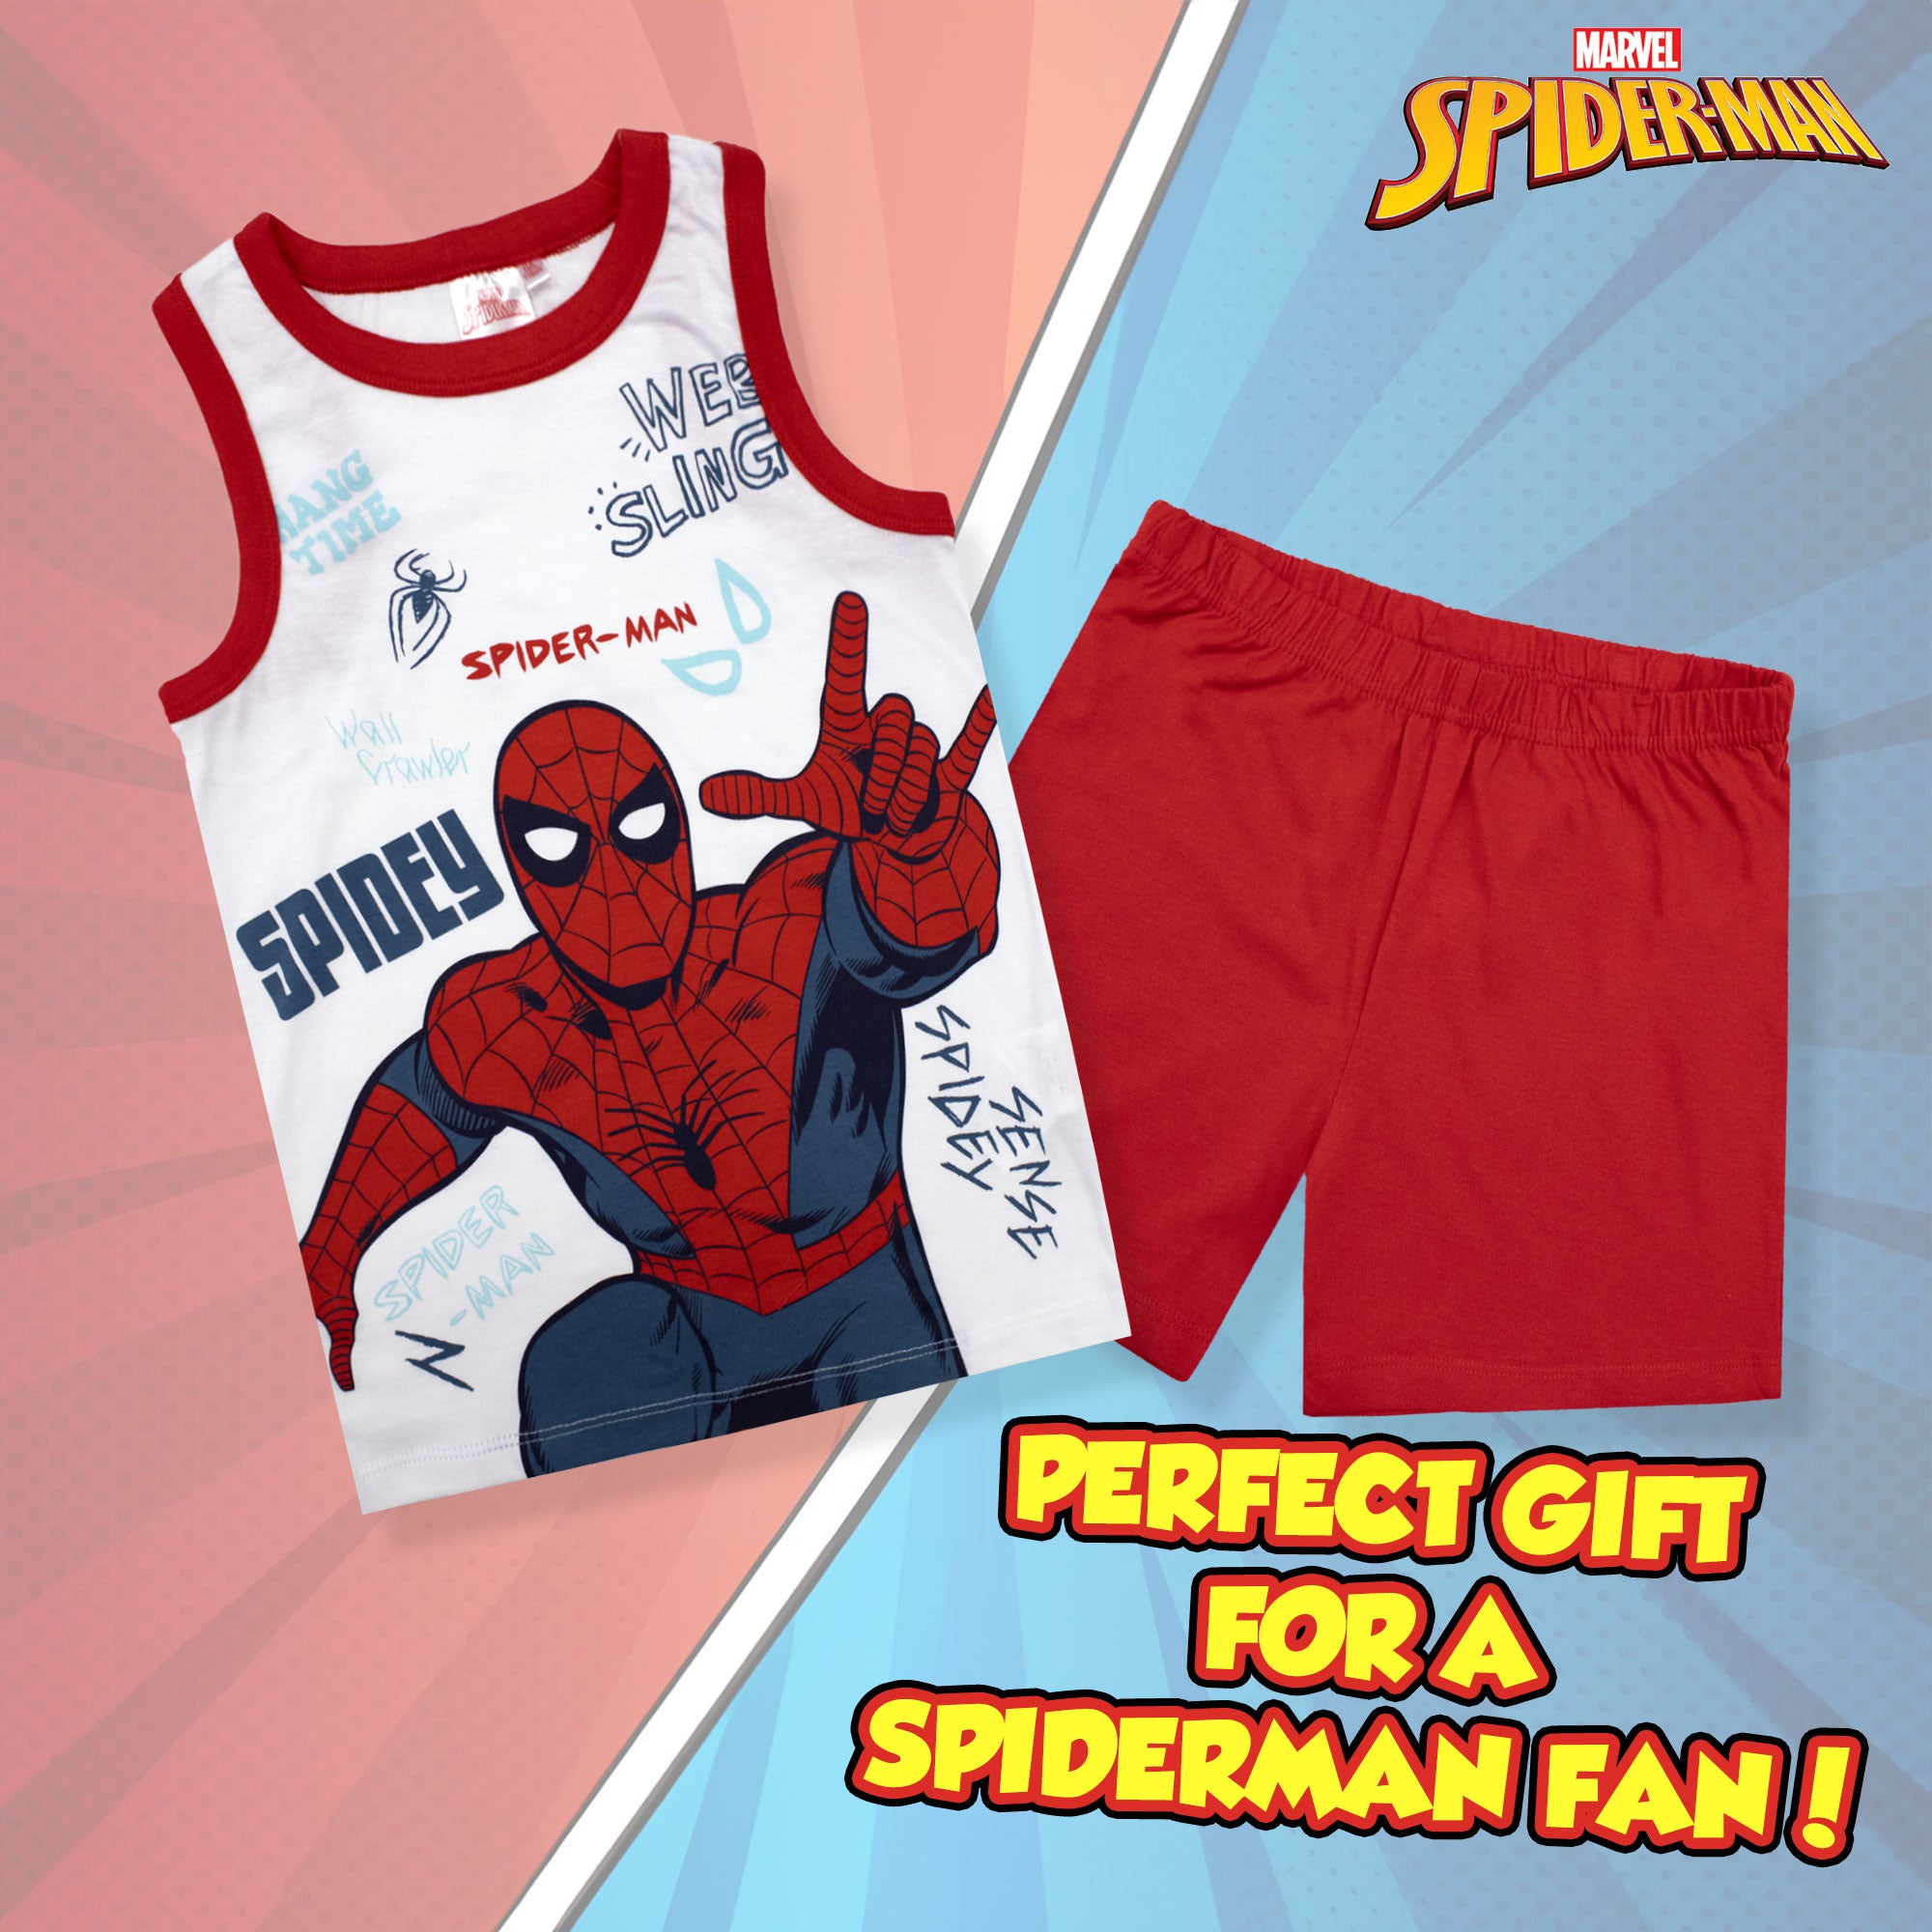 Pigiama bambino Marvel Spiderman canotta e pantalone corto estivo cotone 6778